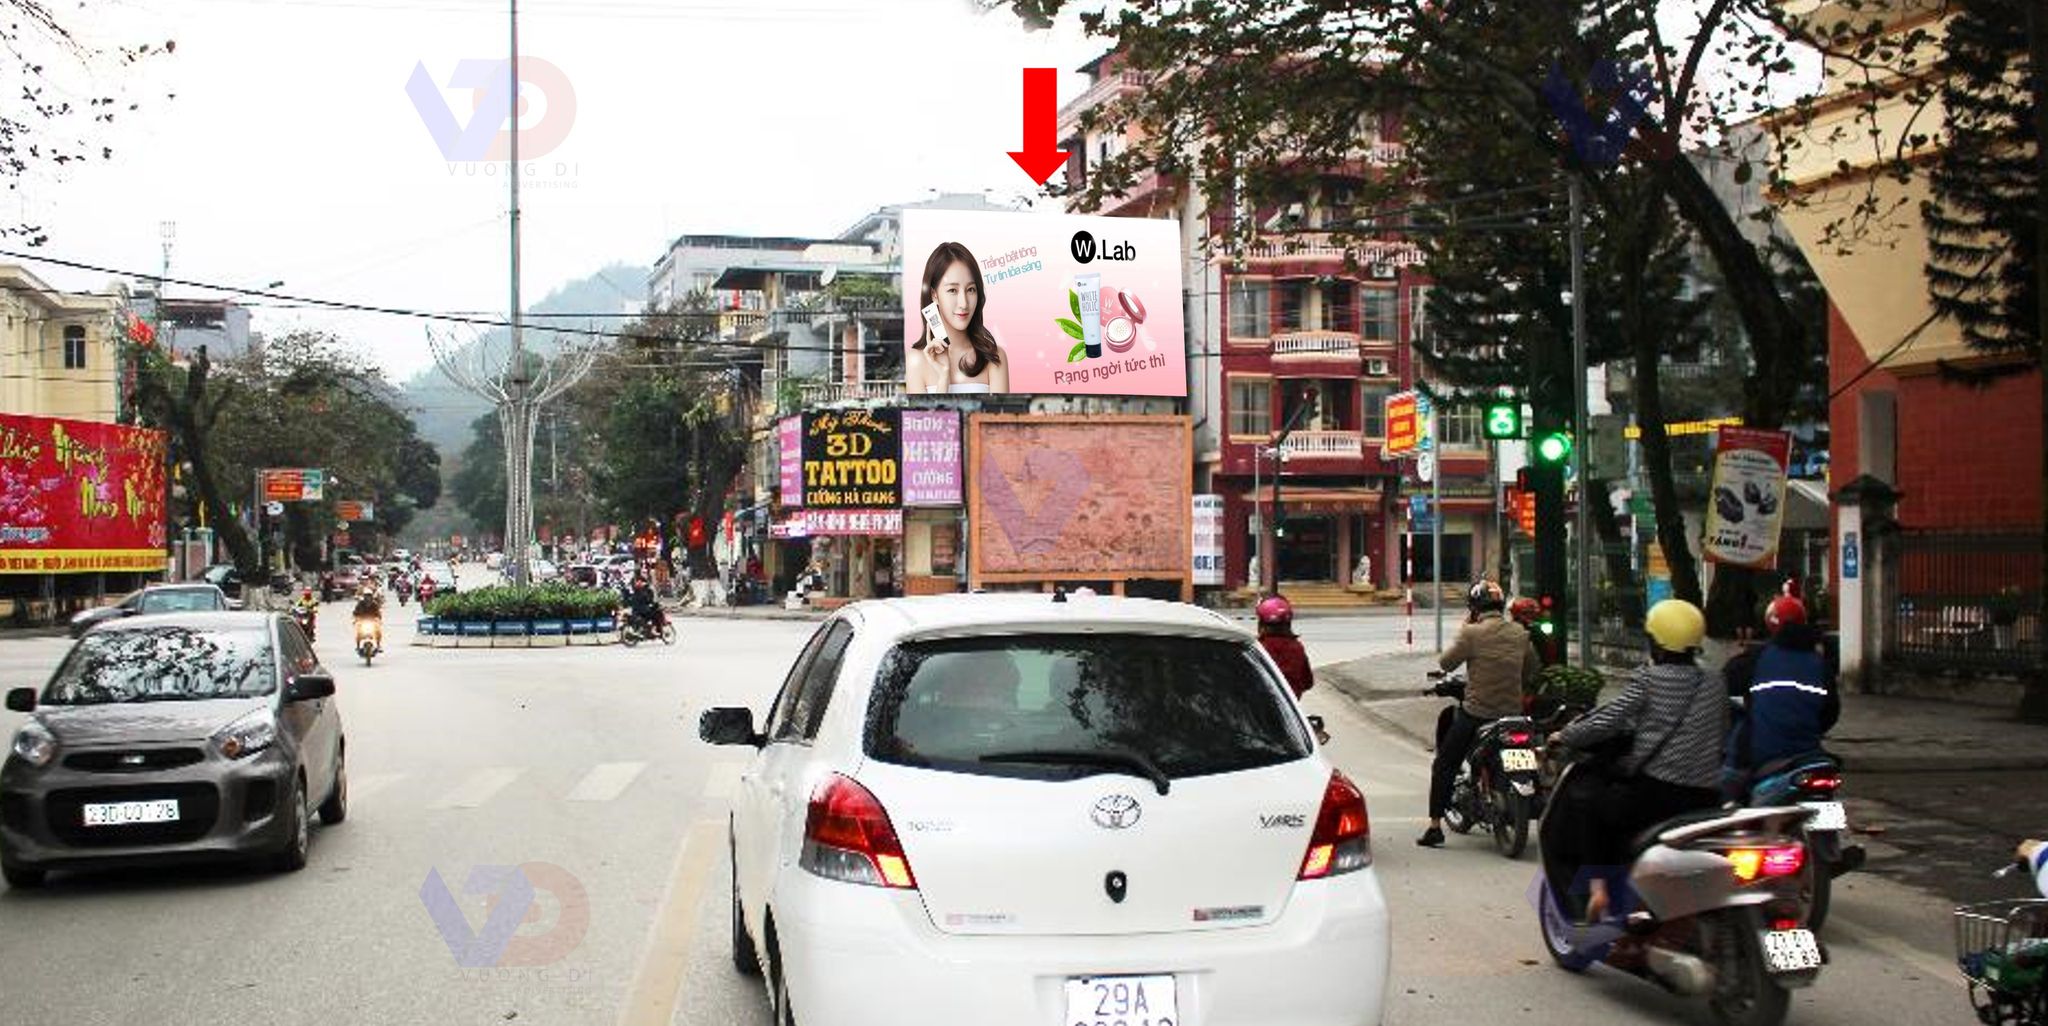 Bảng quảng cáo tại Vòng xoay Trần Hưng Đạo - QL 4C, TP Hà Giang, Hà Giang